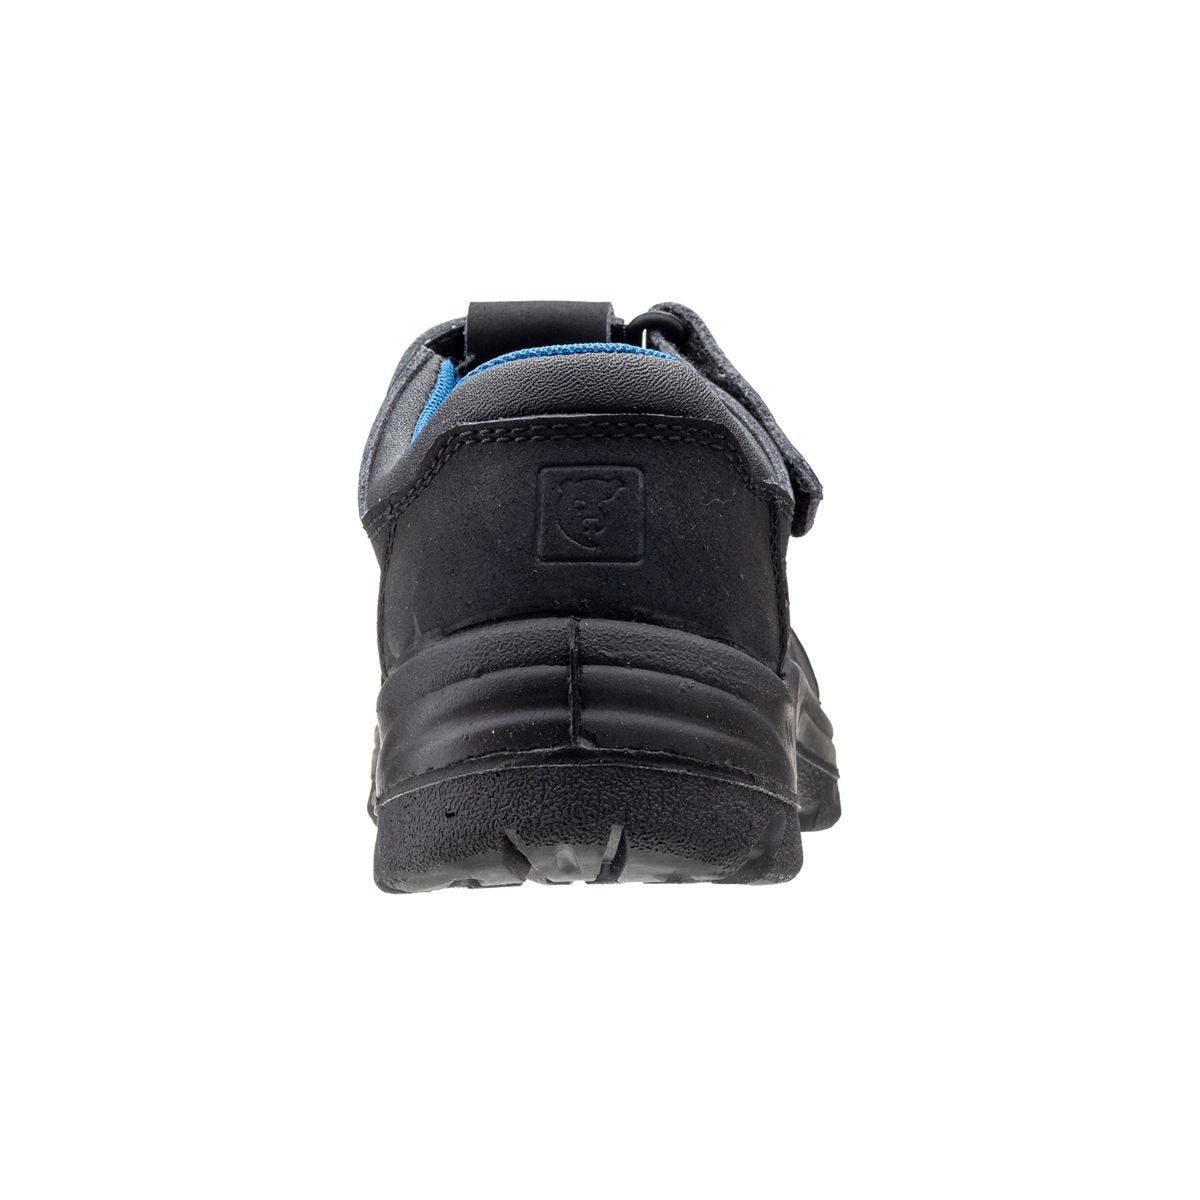 Sandales de travail basses Boni II Noir - Coverguard - Taille 45 2